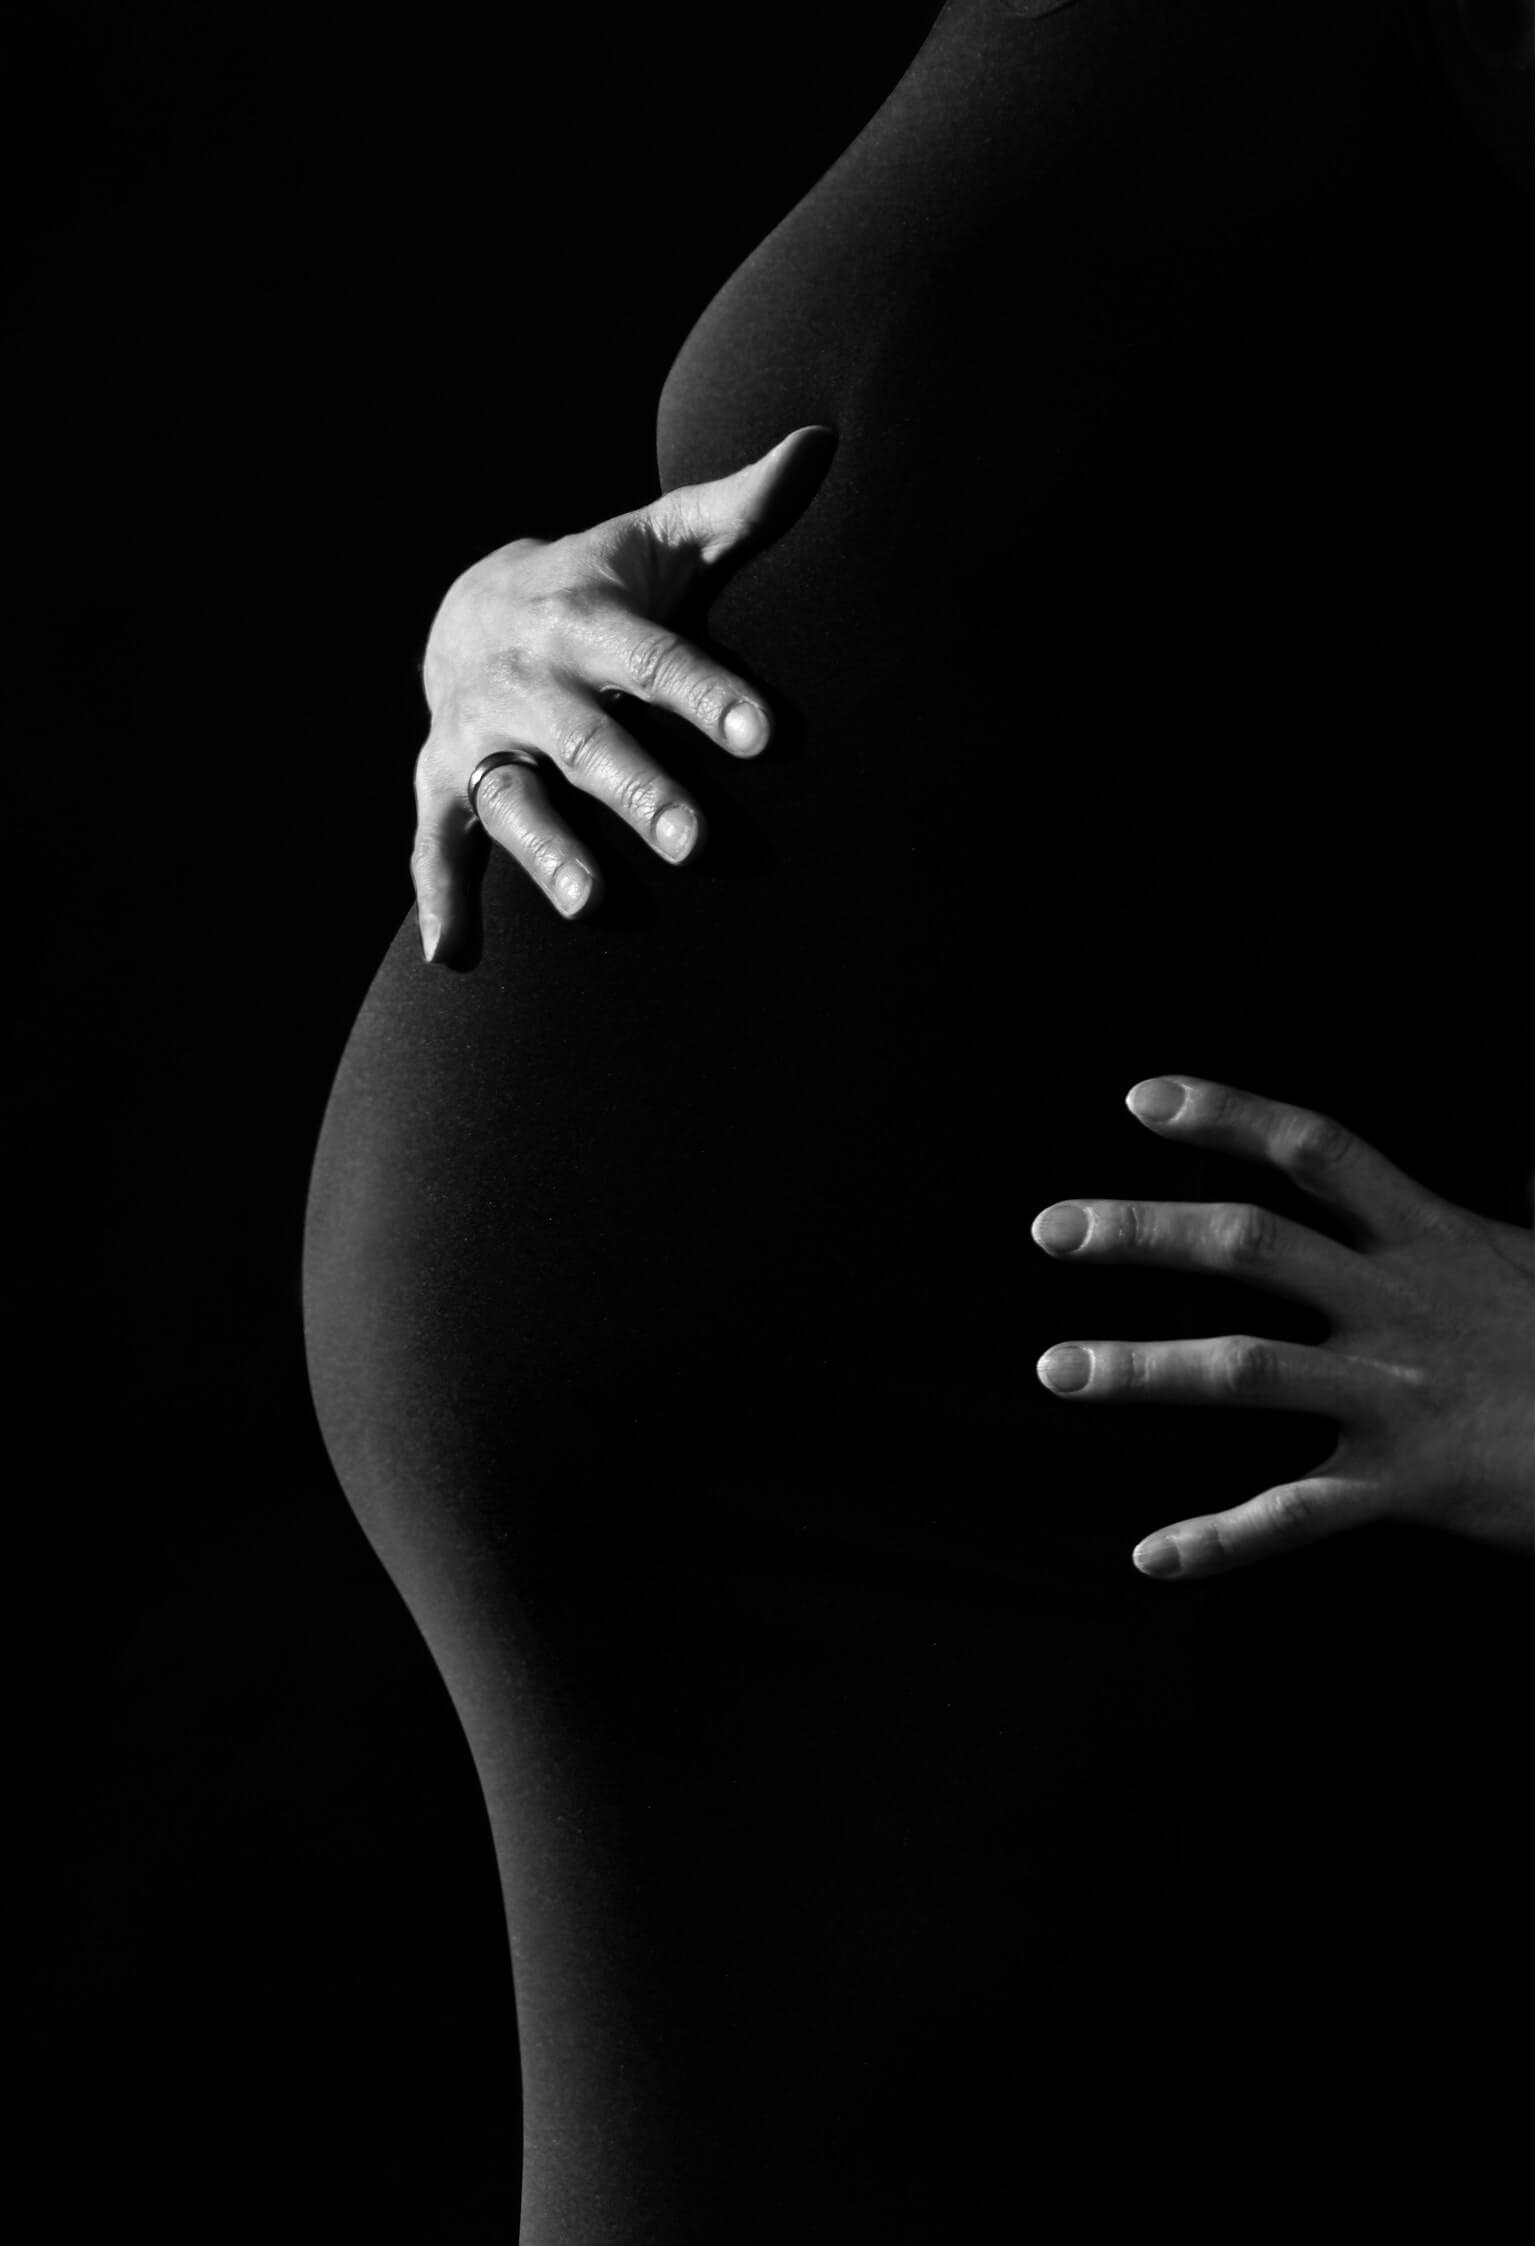 هل تعانين من التبول بكثرة أثناء الحمل؟! 👇😅